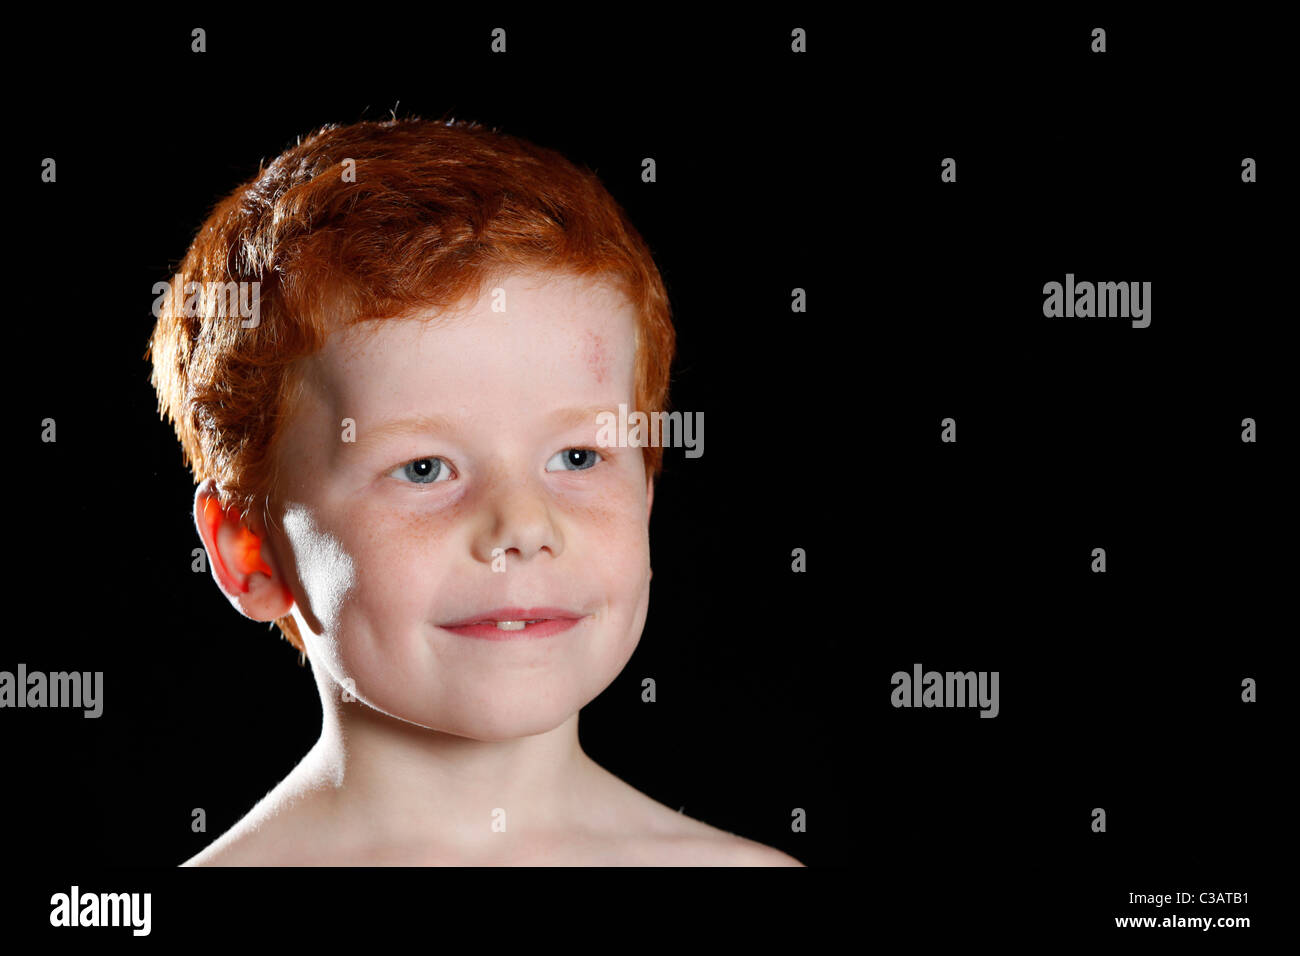 Retrato de un niño de siete años con el pelo rojo y ojos azules. Foto de stock